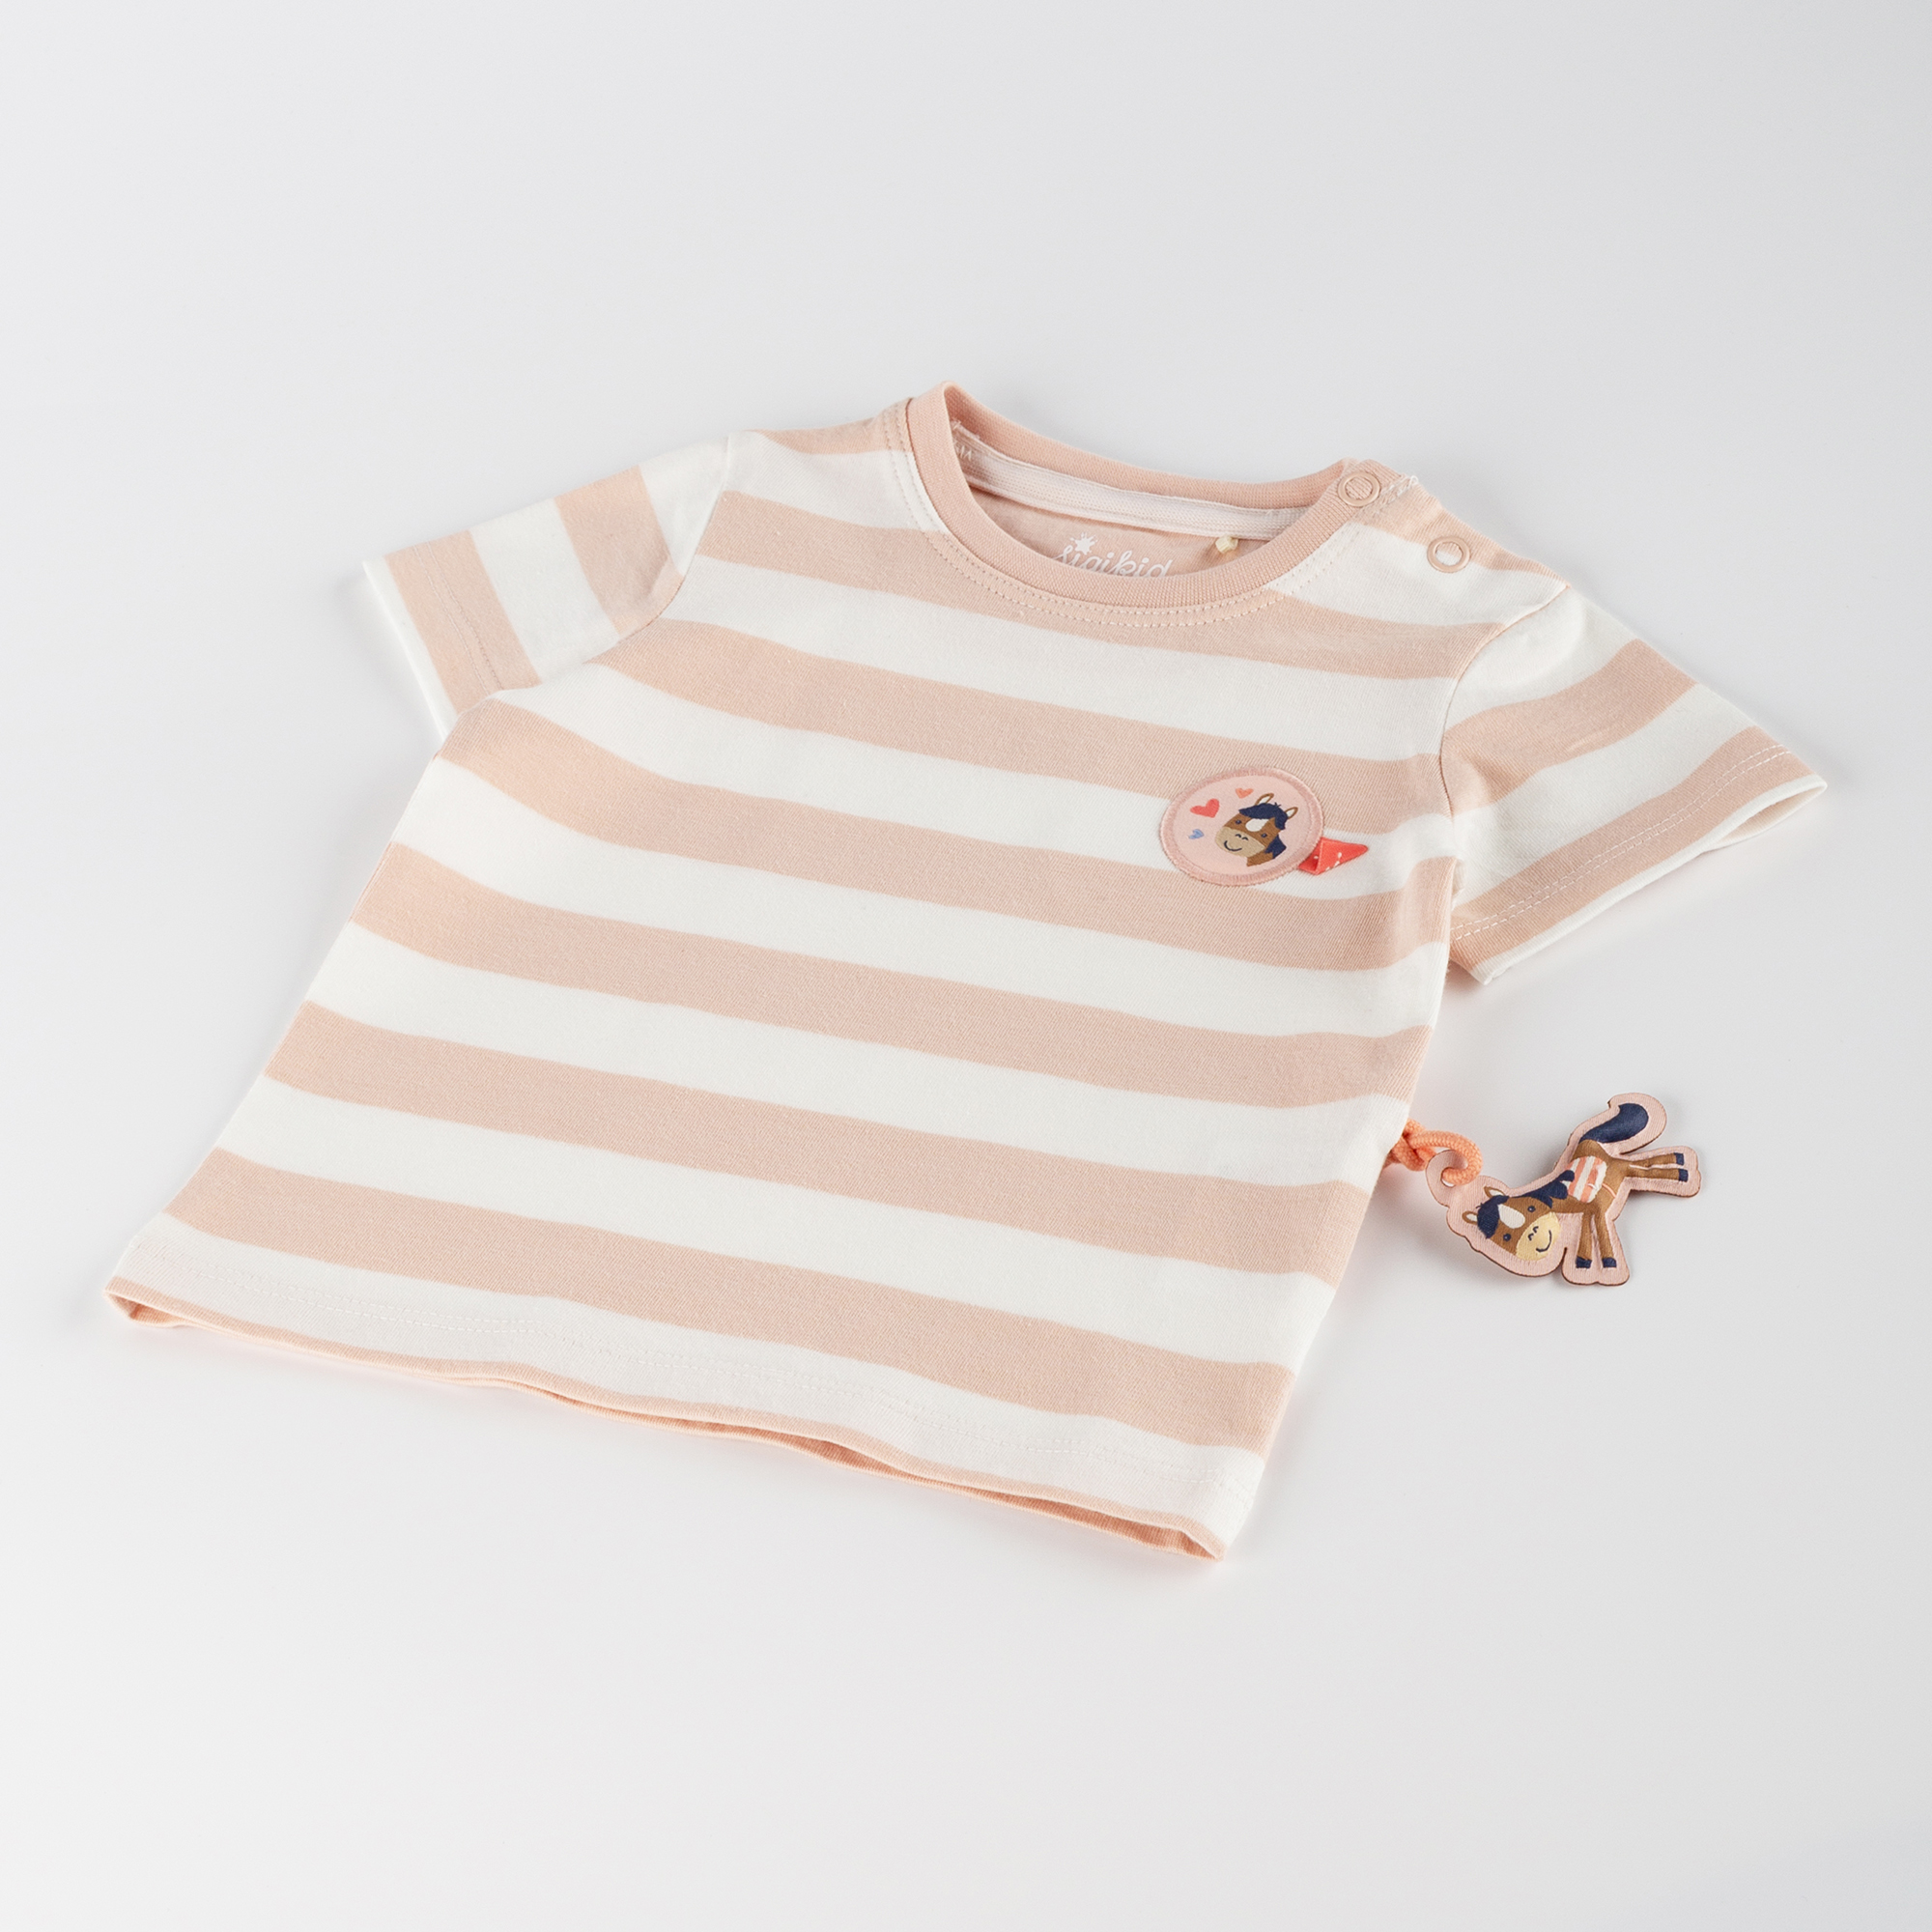 Baby T-Shirt mit Pferdchen Patch, rosa-weiß gestreift